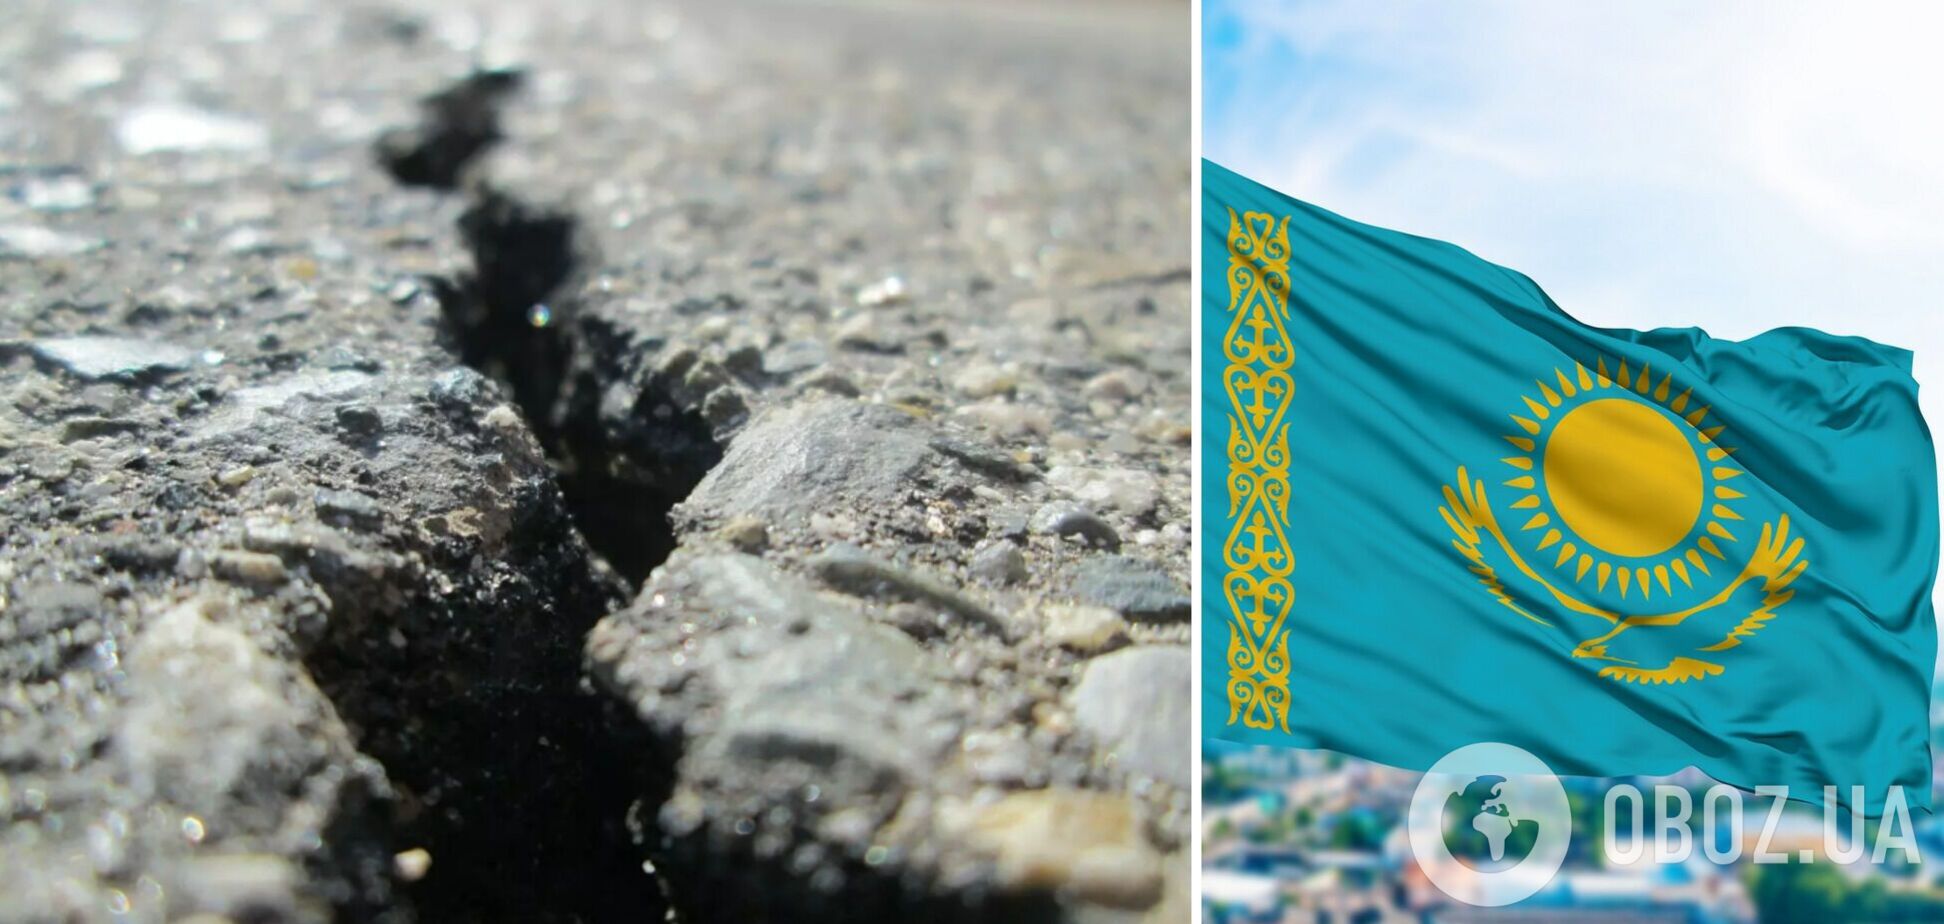 Після Туреччини та Сирії потужний землетрус струсонув Казахстан: подробиці